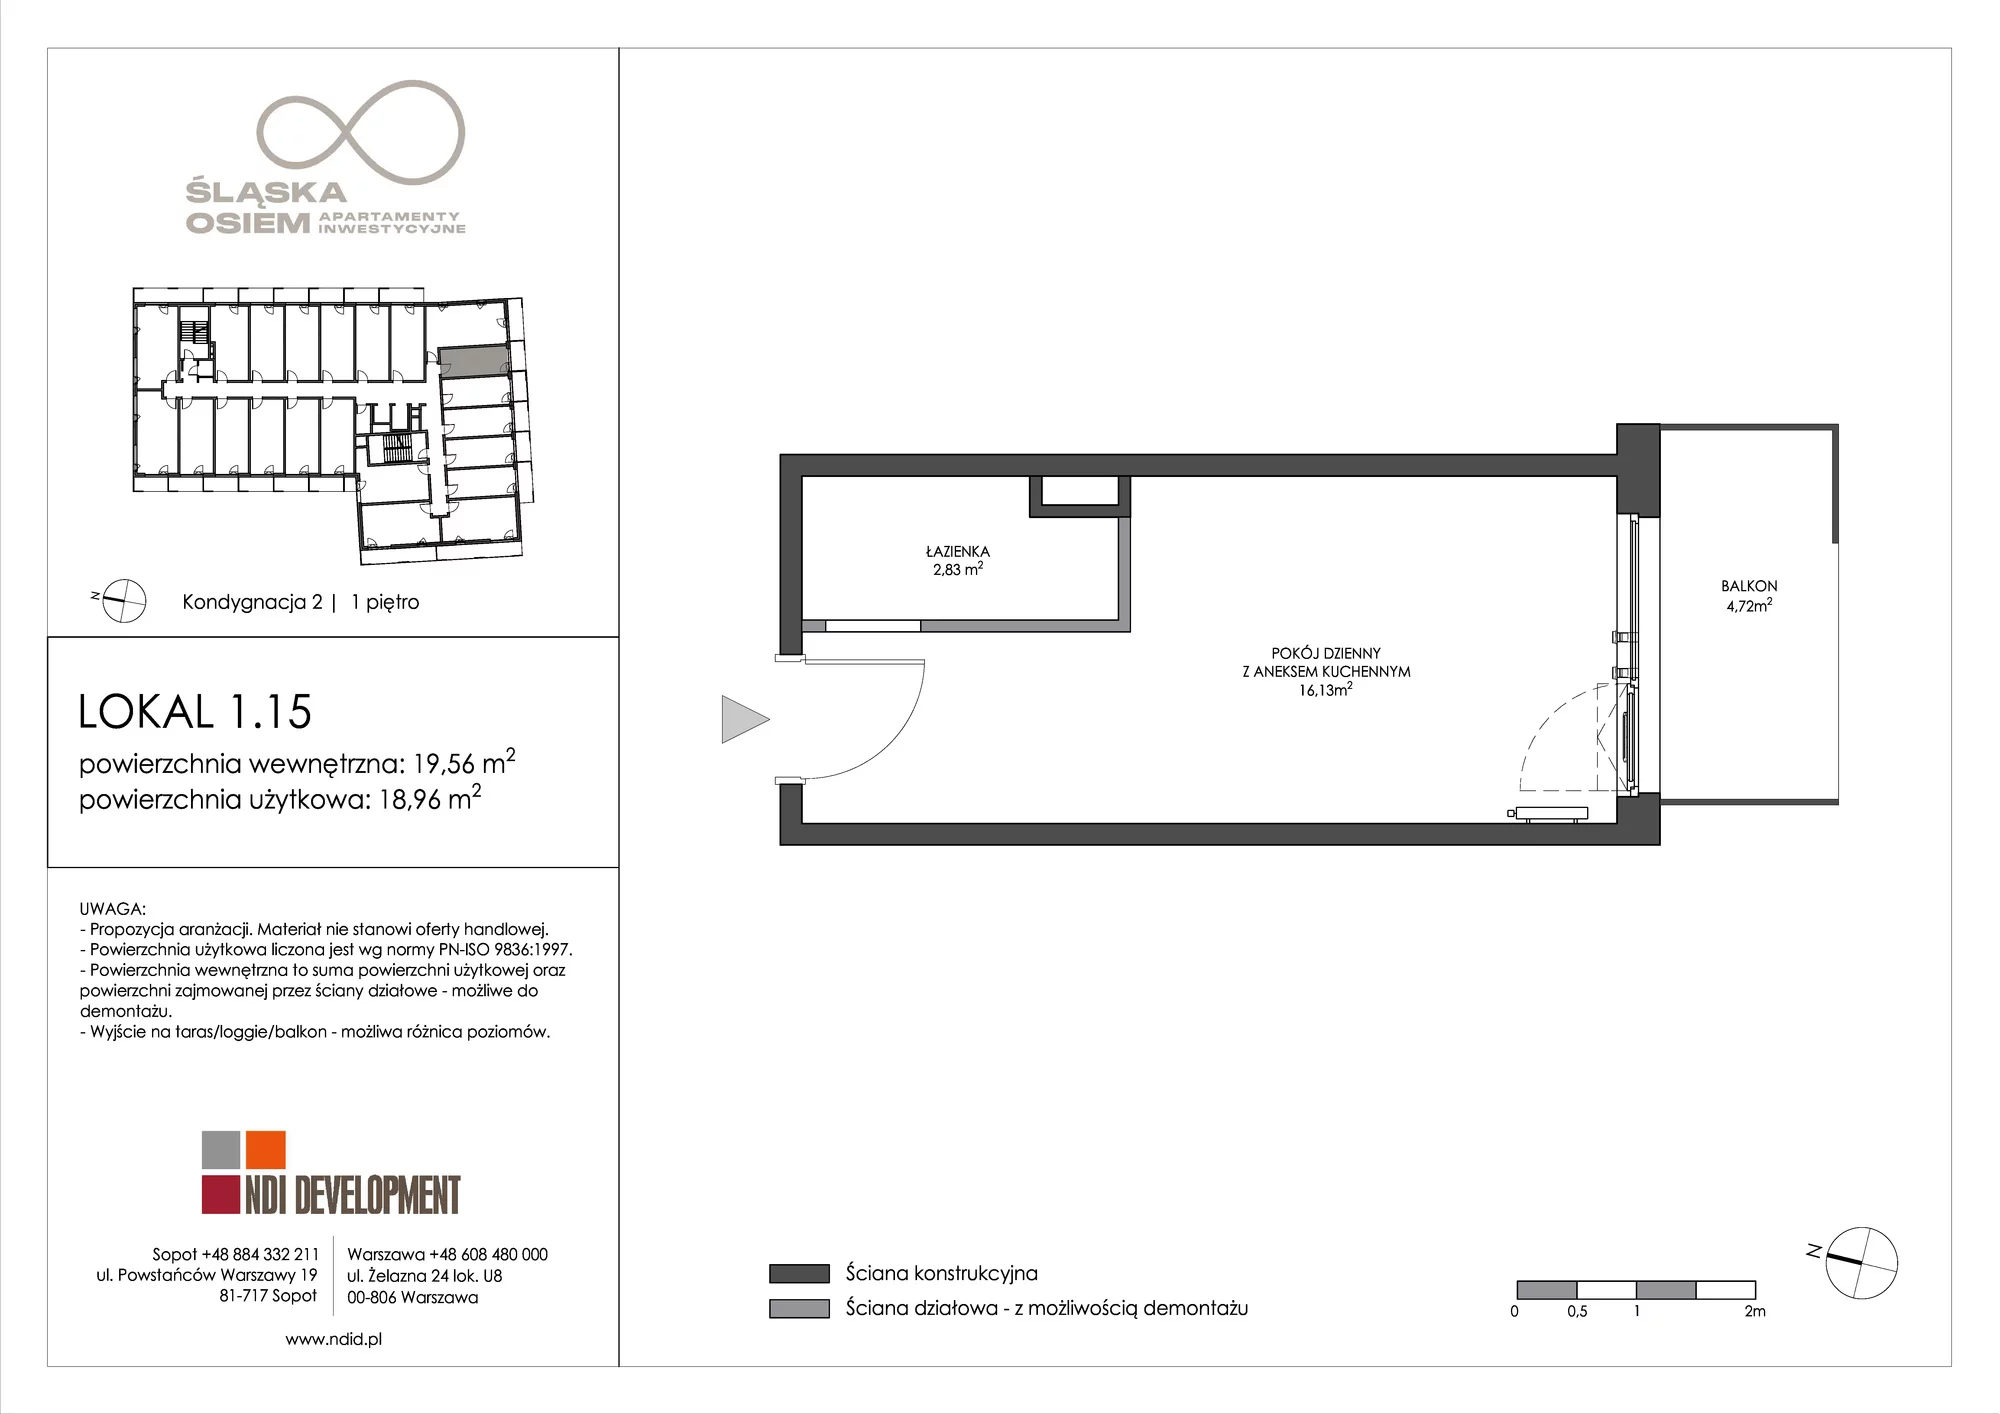 Apartament inwestycyjny 19,56 m², piętro 1, oferta nr 1.15, Śląska Osiem, Gdańsk, Przymorze, ul. Śląska 8